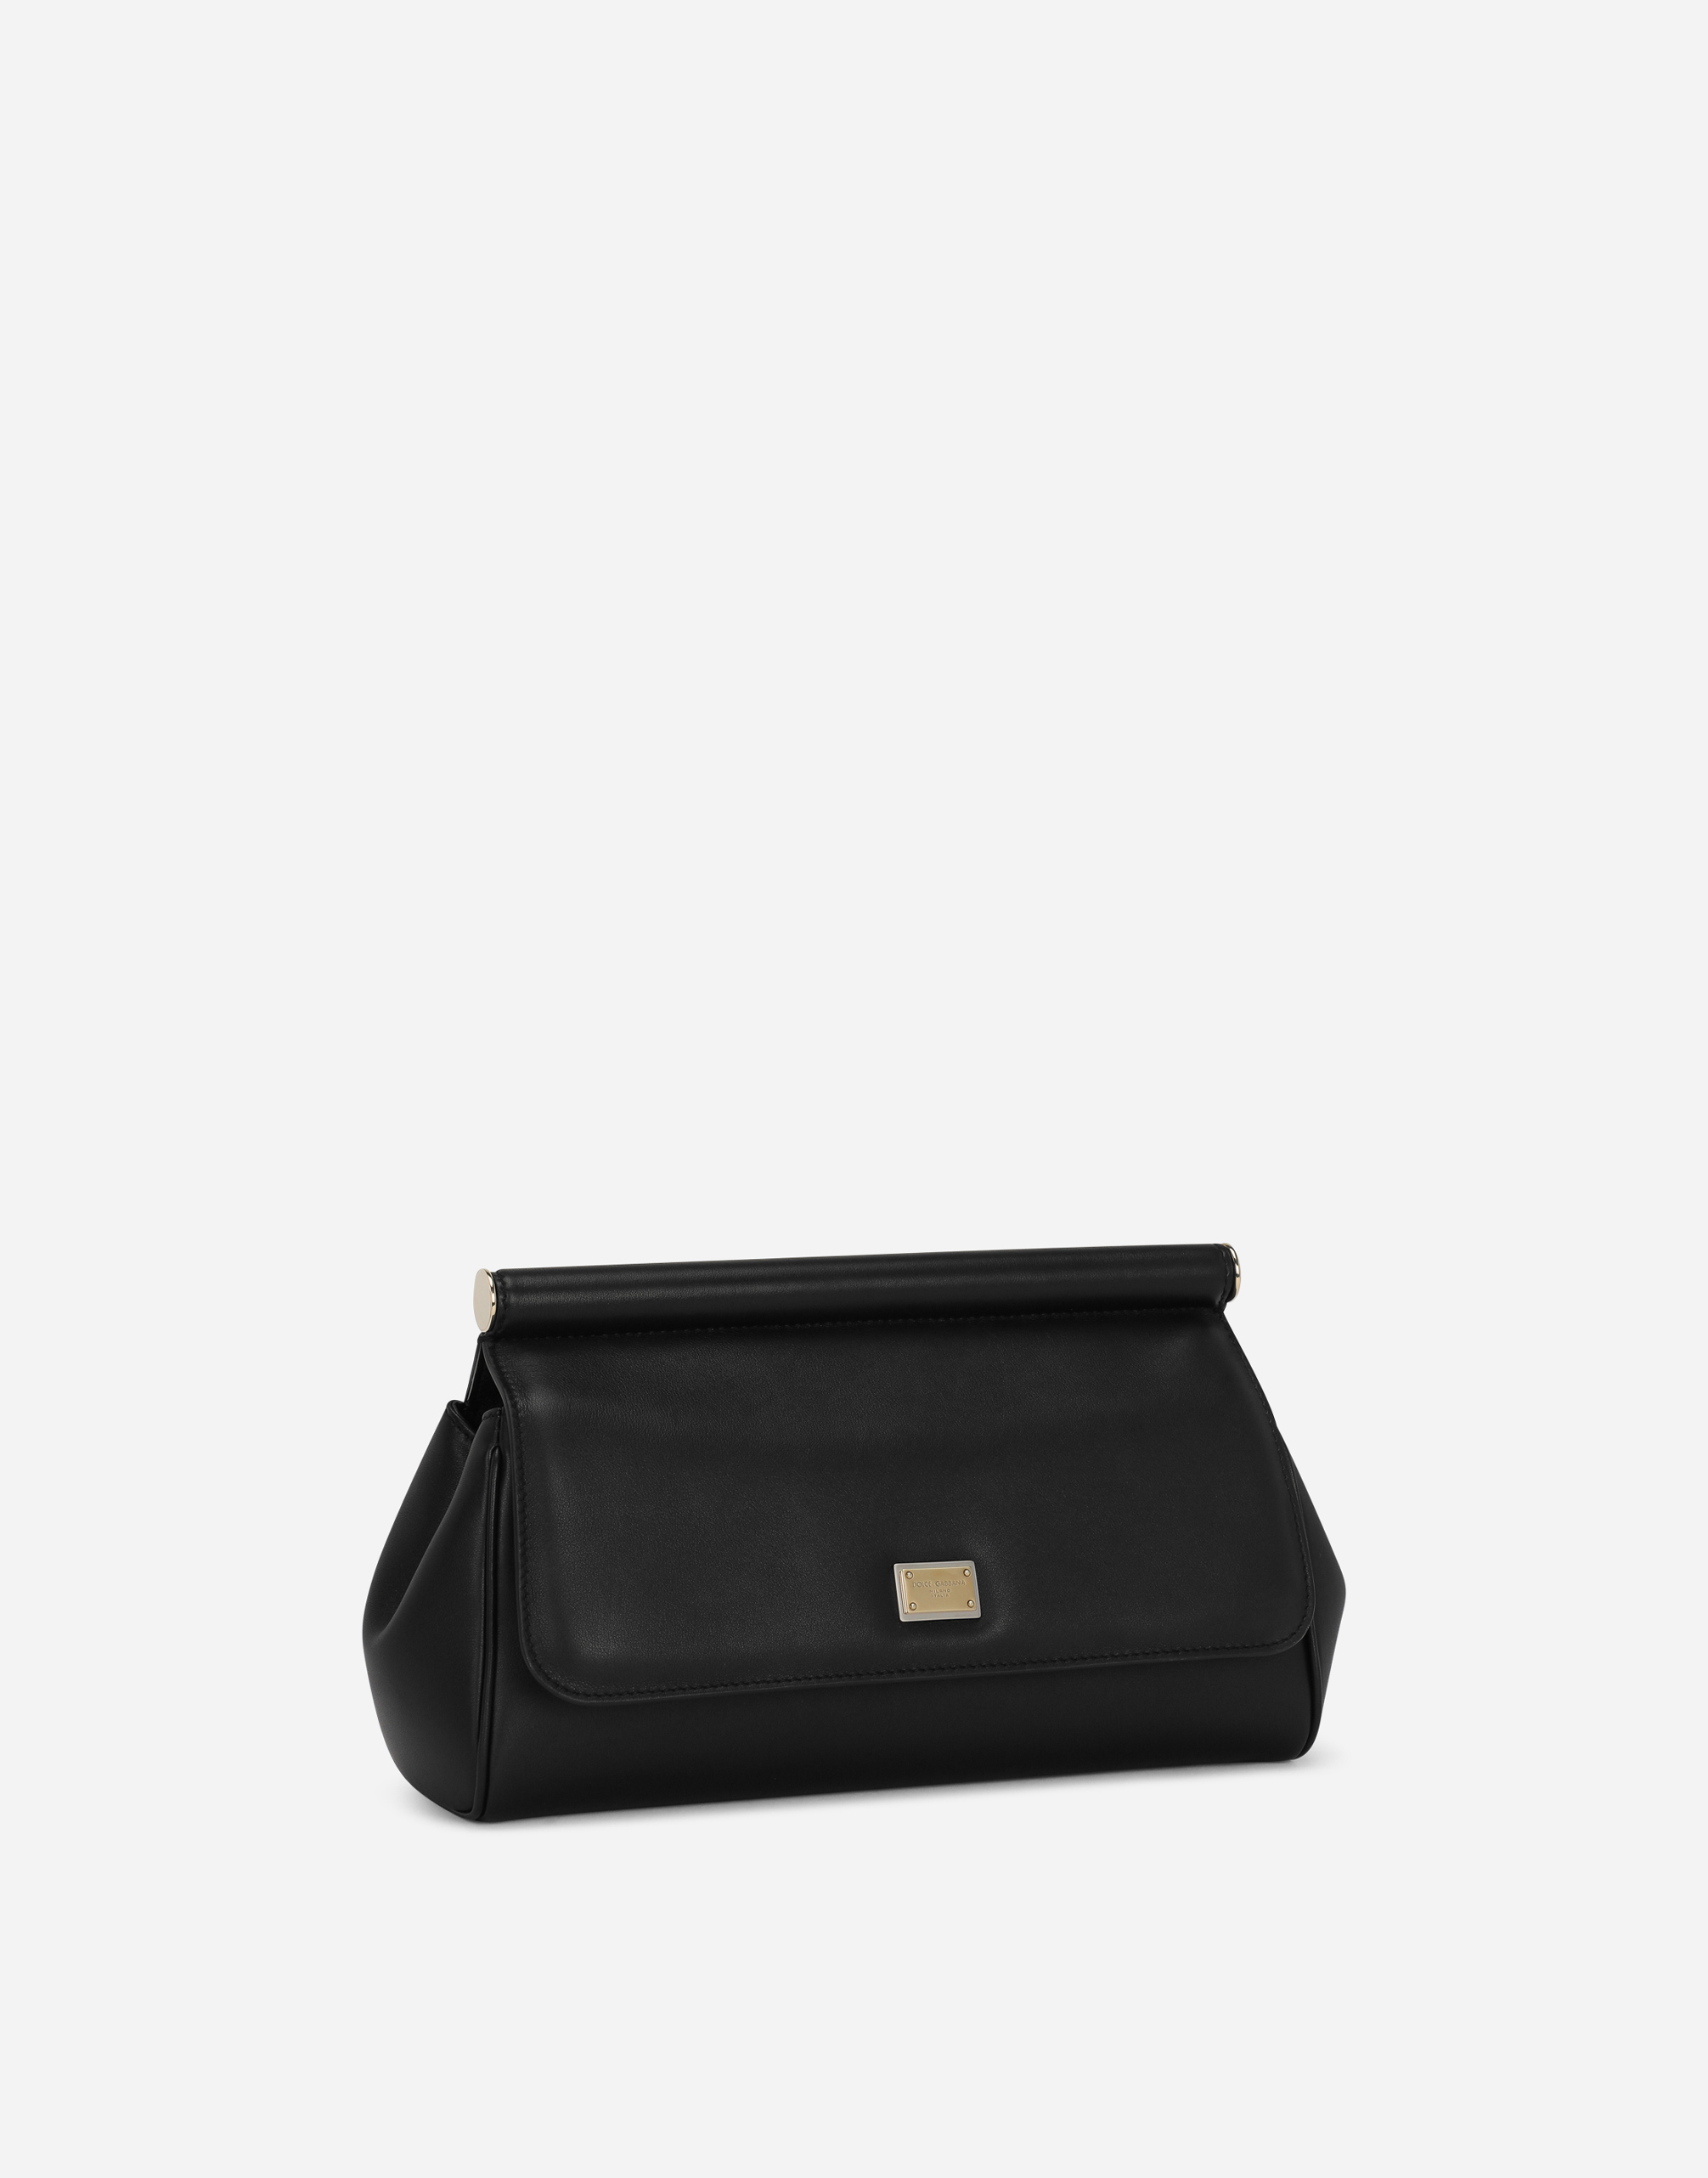 Sicily handbag in Black